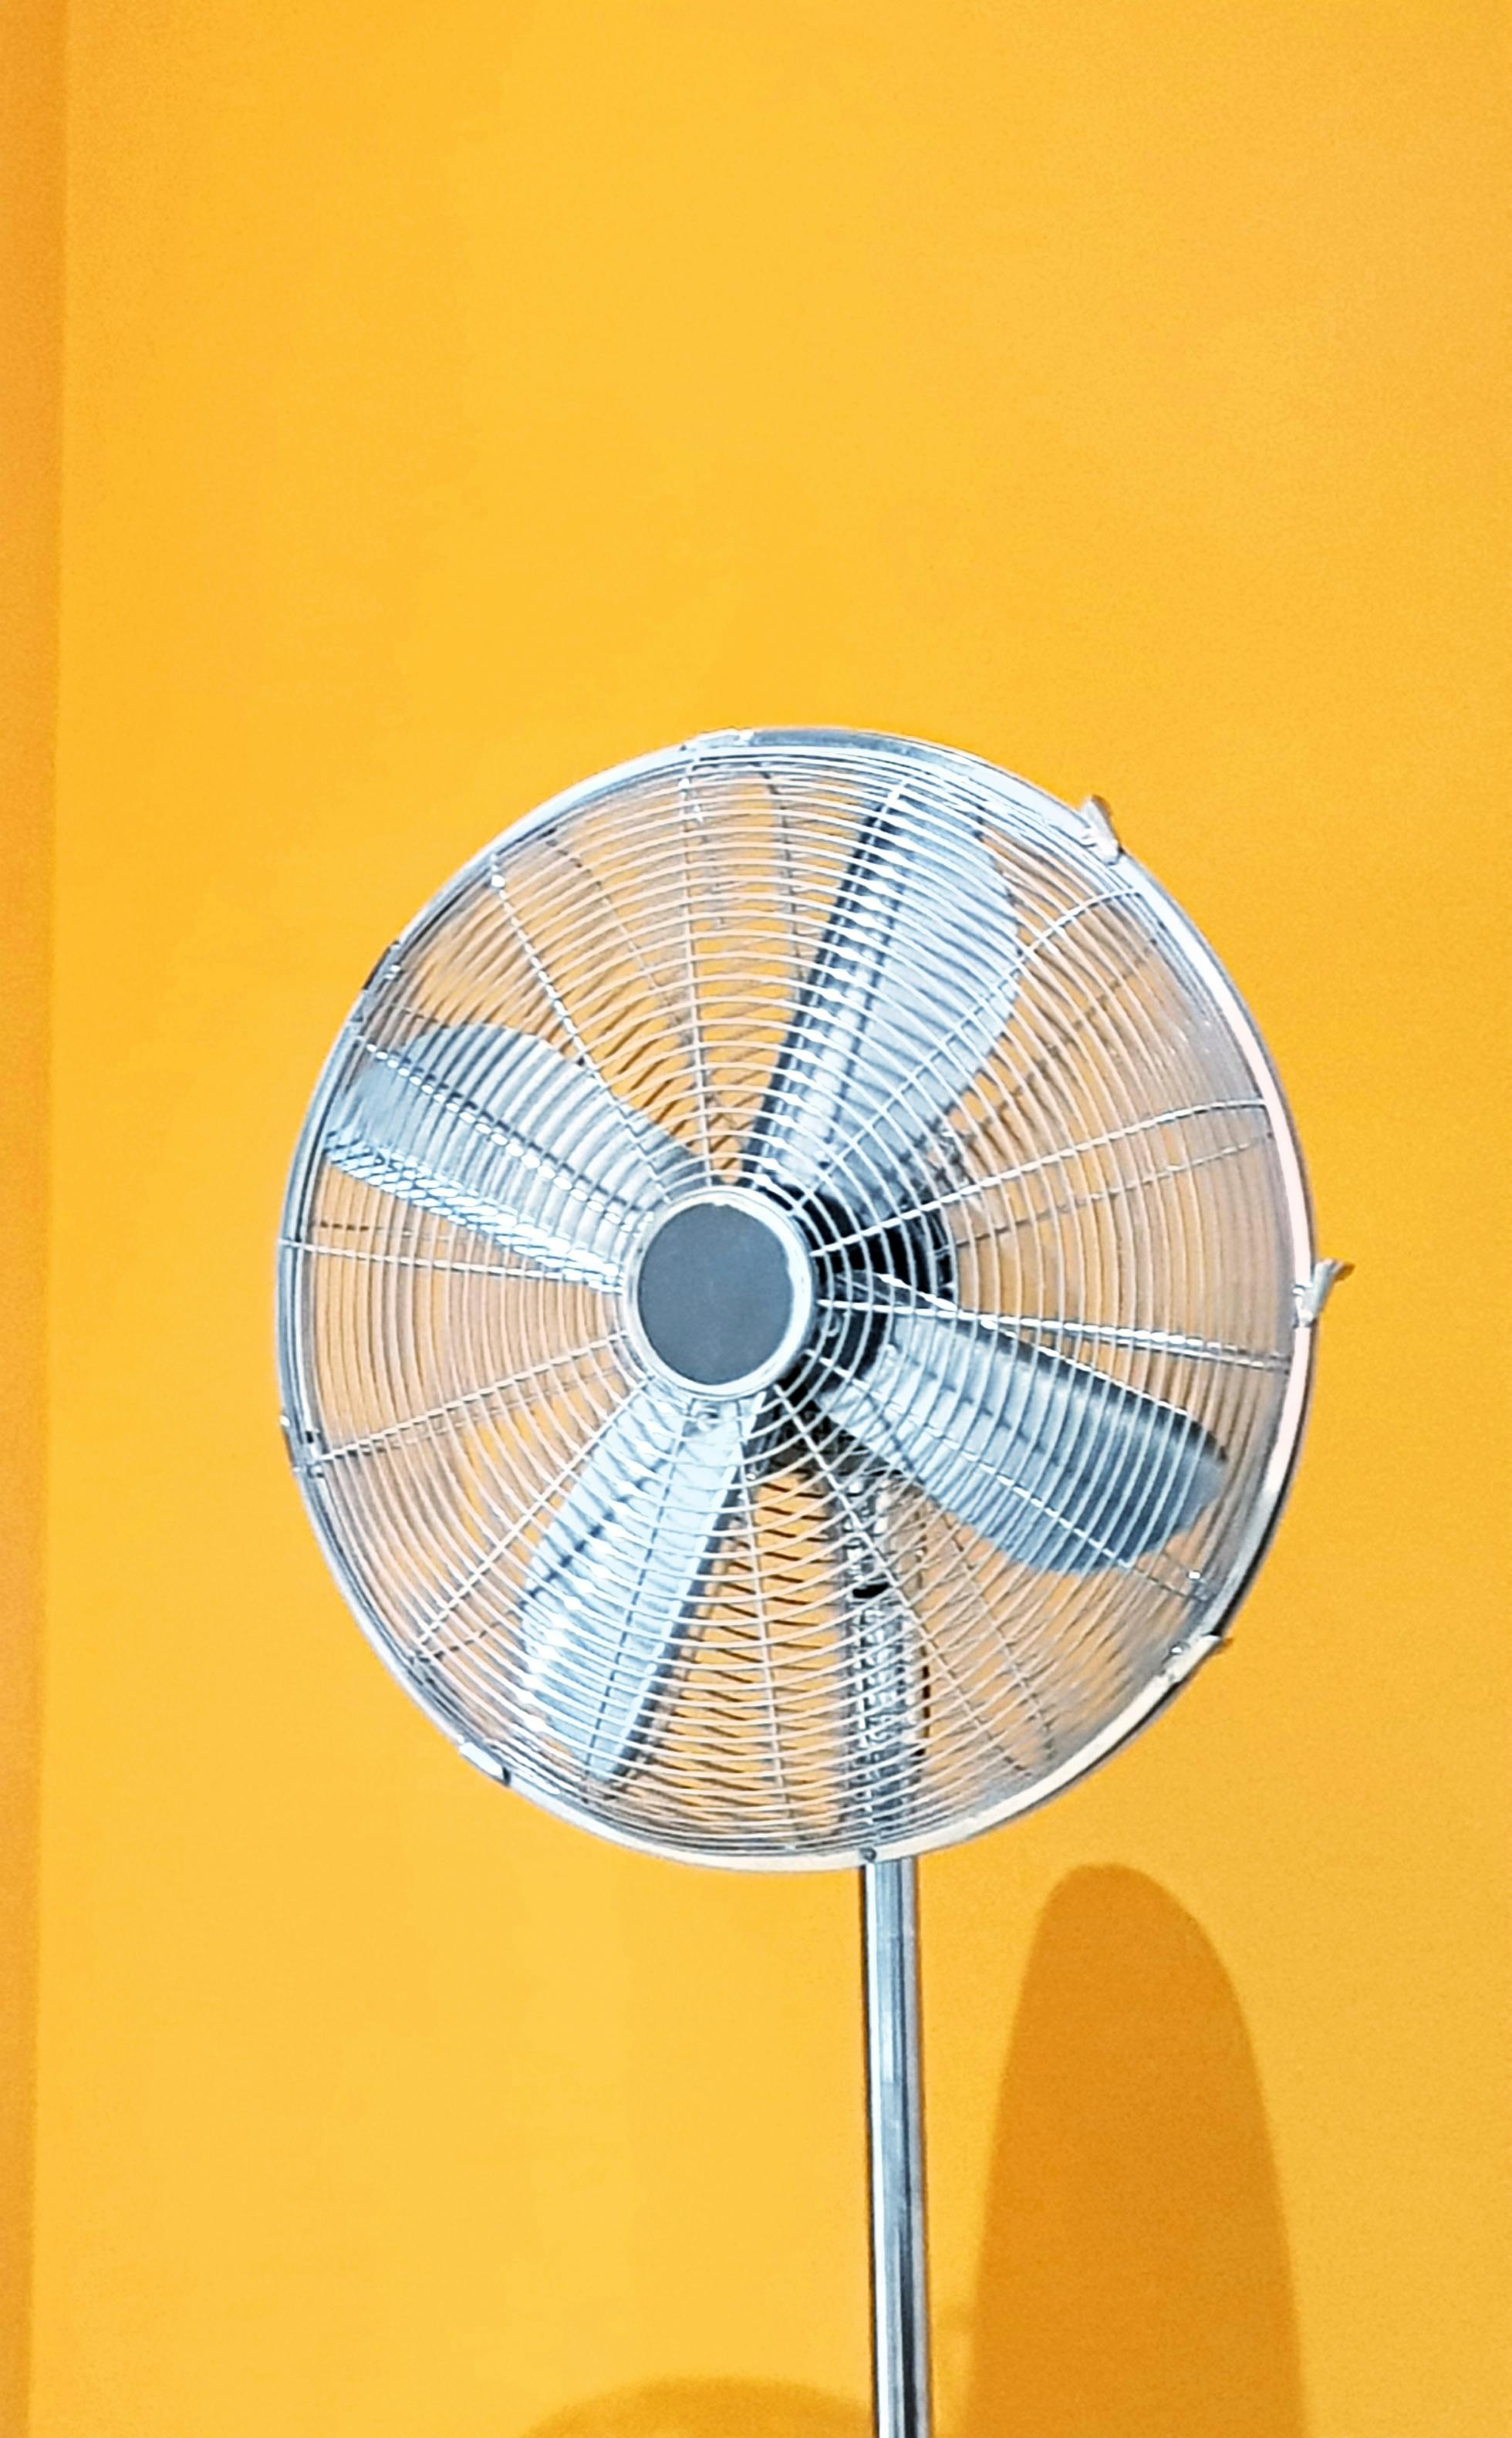 Free stock photo of electric fan, fan